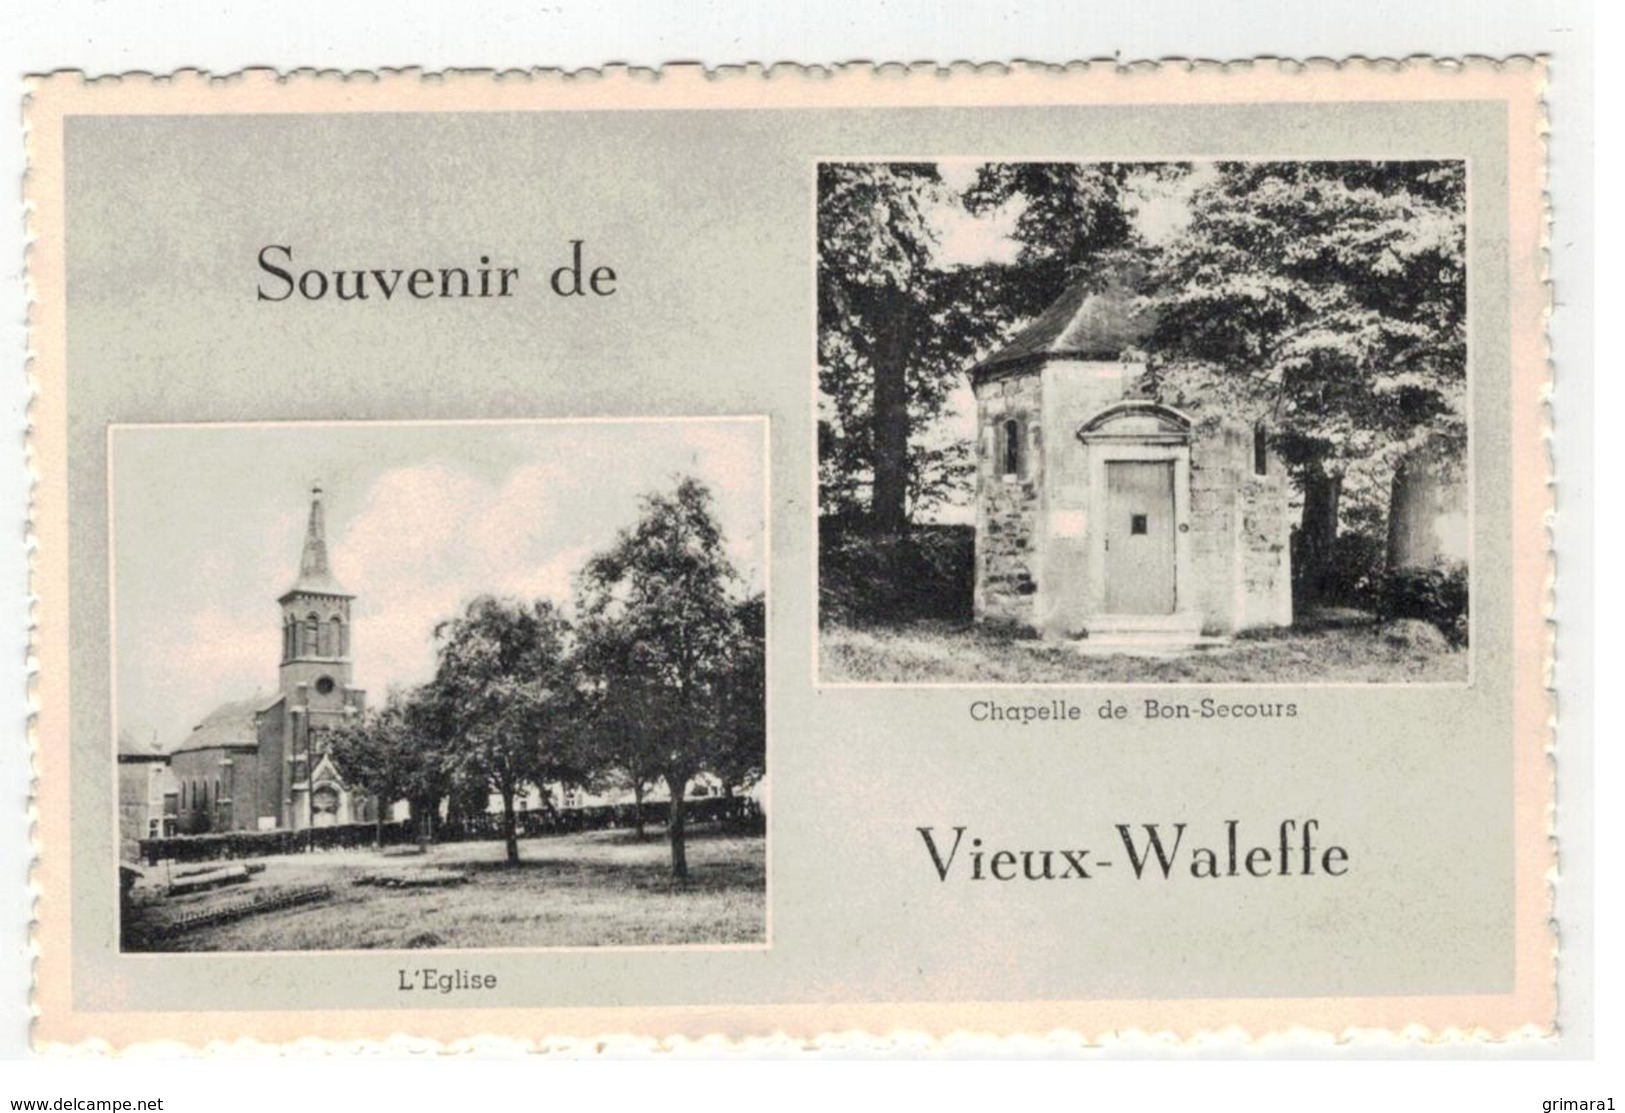 Vieux-Waleffe   Souvenir De Vieux-Waleffe   L'Eglise  Chapelle De Bon-Secours - Villers-le-Bouillet